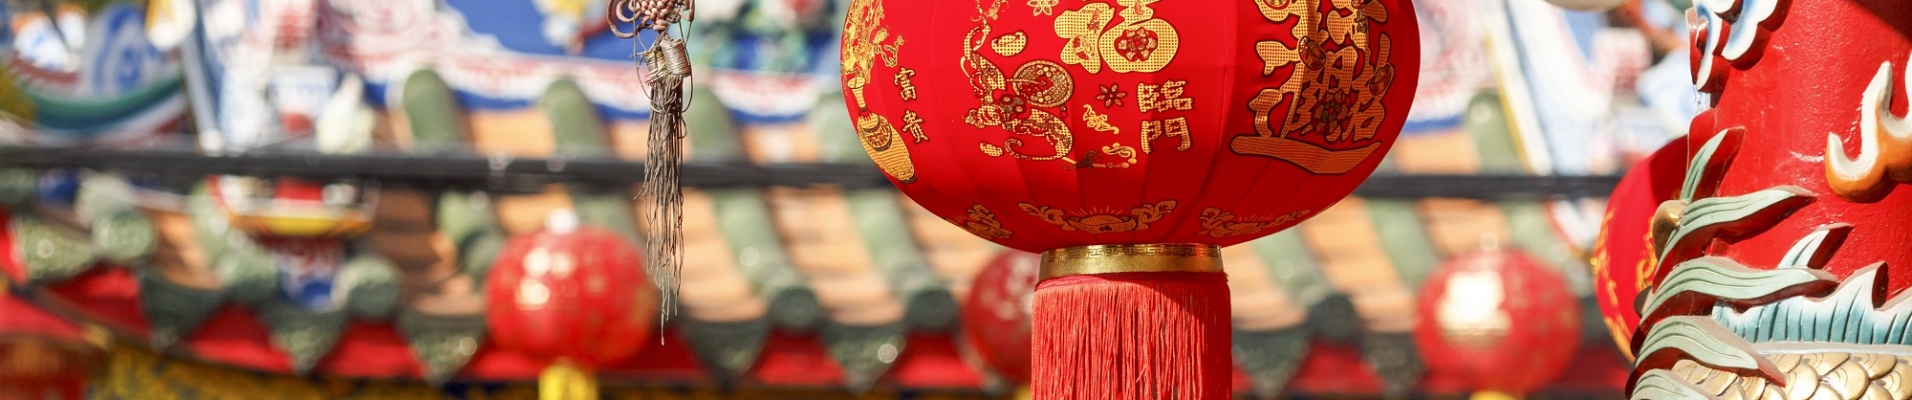 Lanternes chinoises du nouvel an